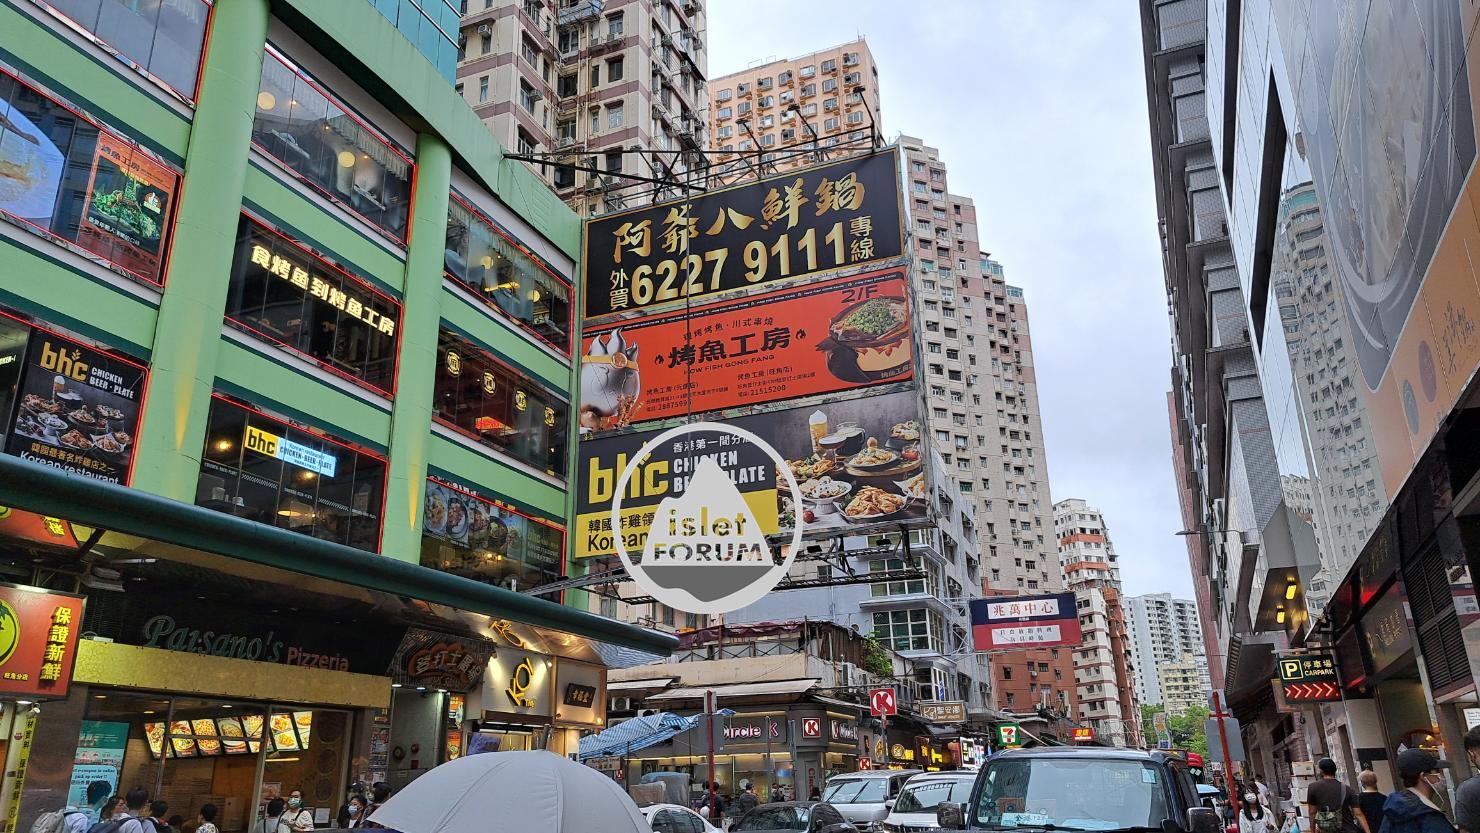 登打士街超大廣告牌Dundas Street oversized billboard (4).jpg